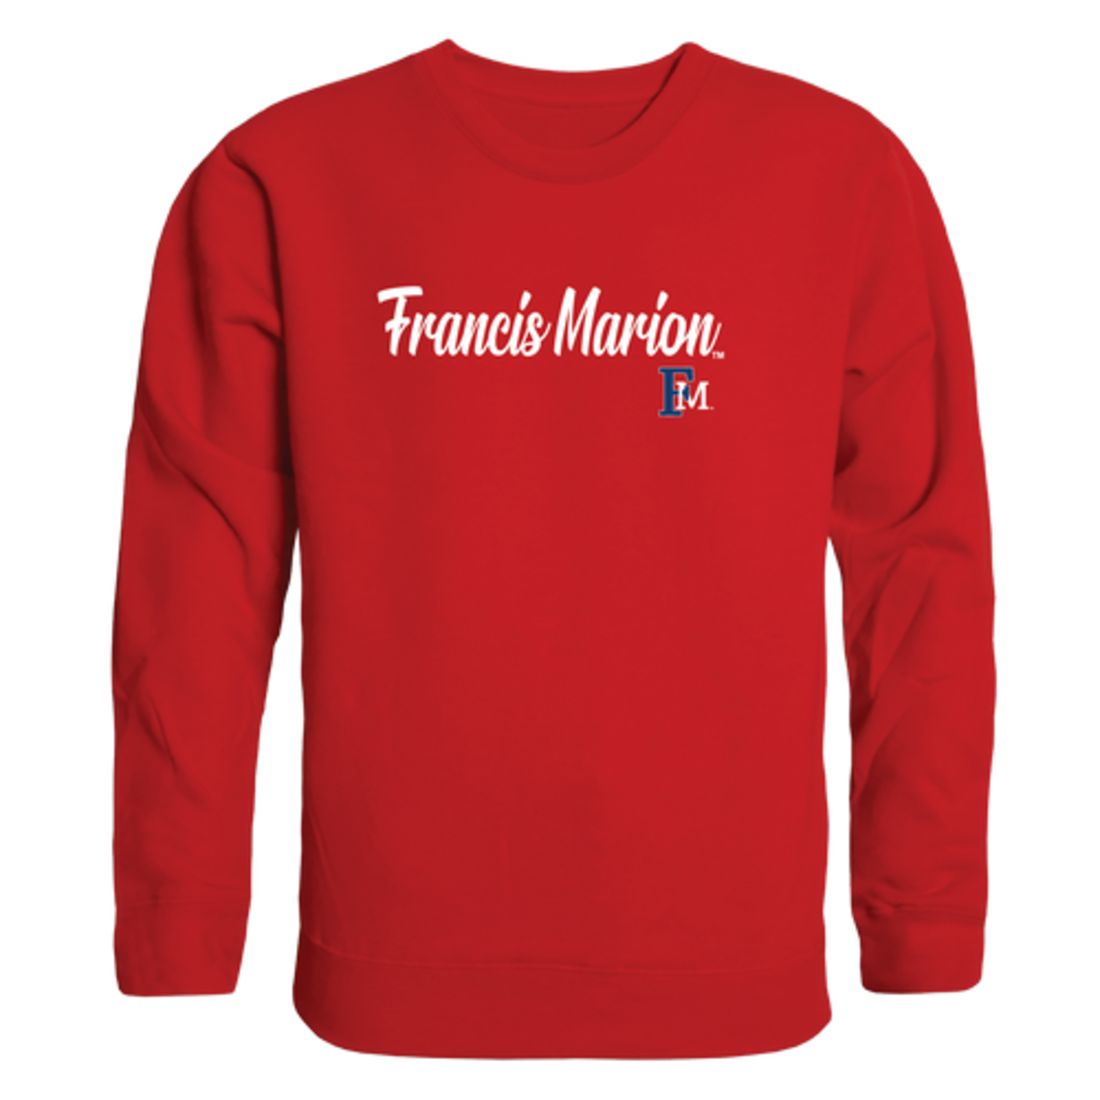 FMU Francis Marion University Patriots Script Crewneck Pullover Sweatshirt Sweater Black-Campus-Wardrobe